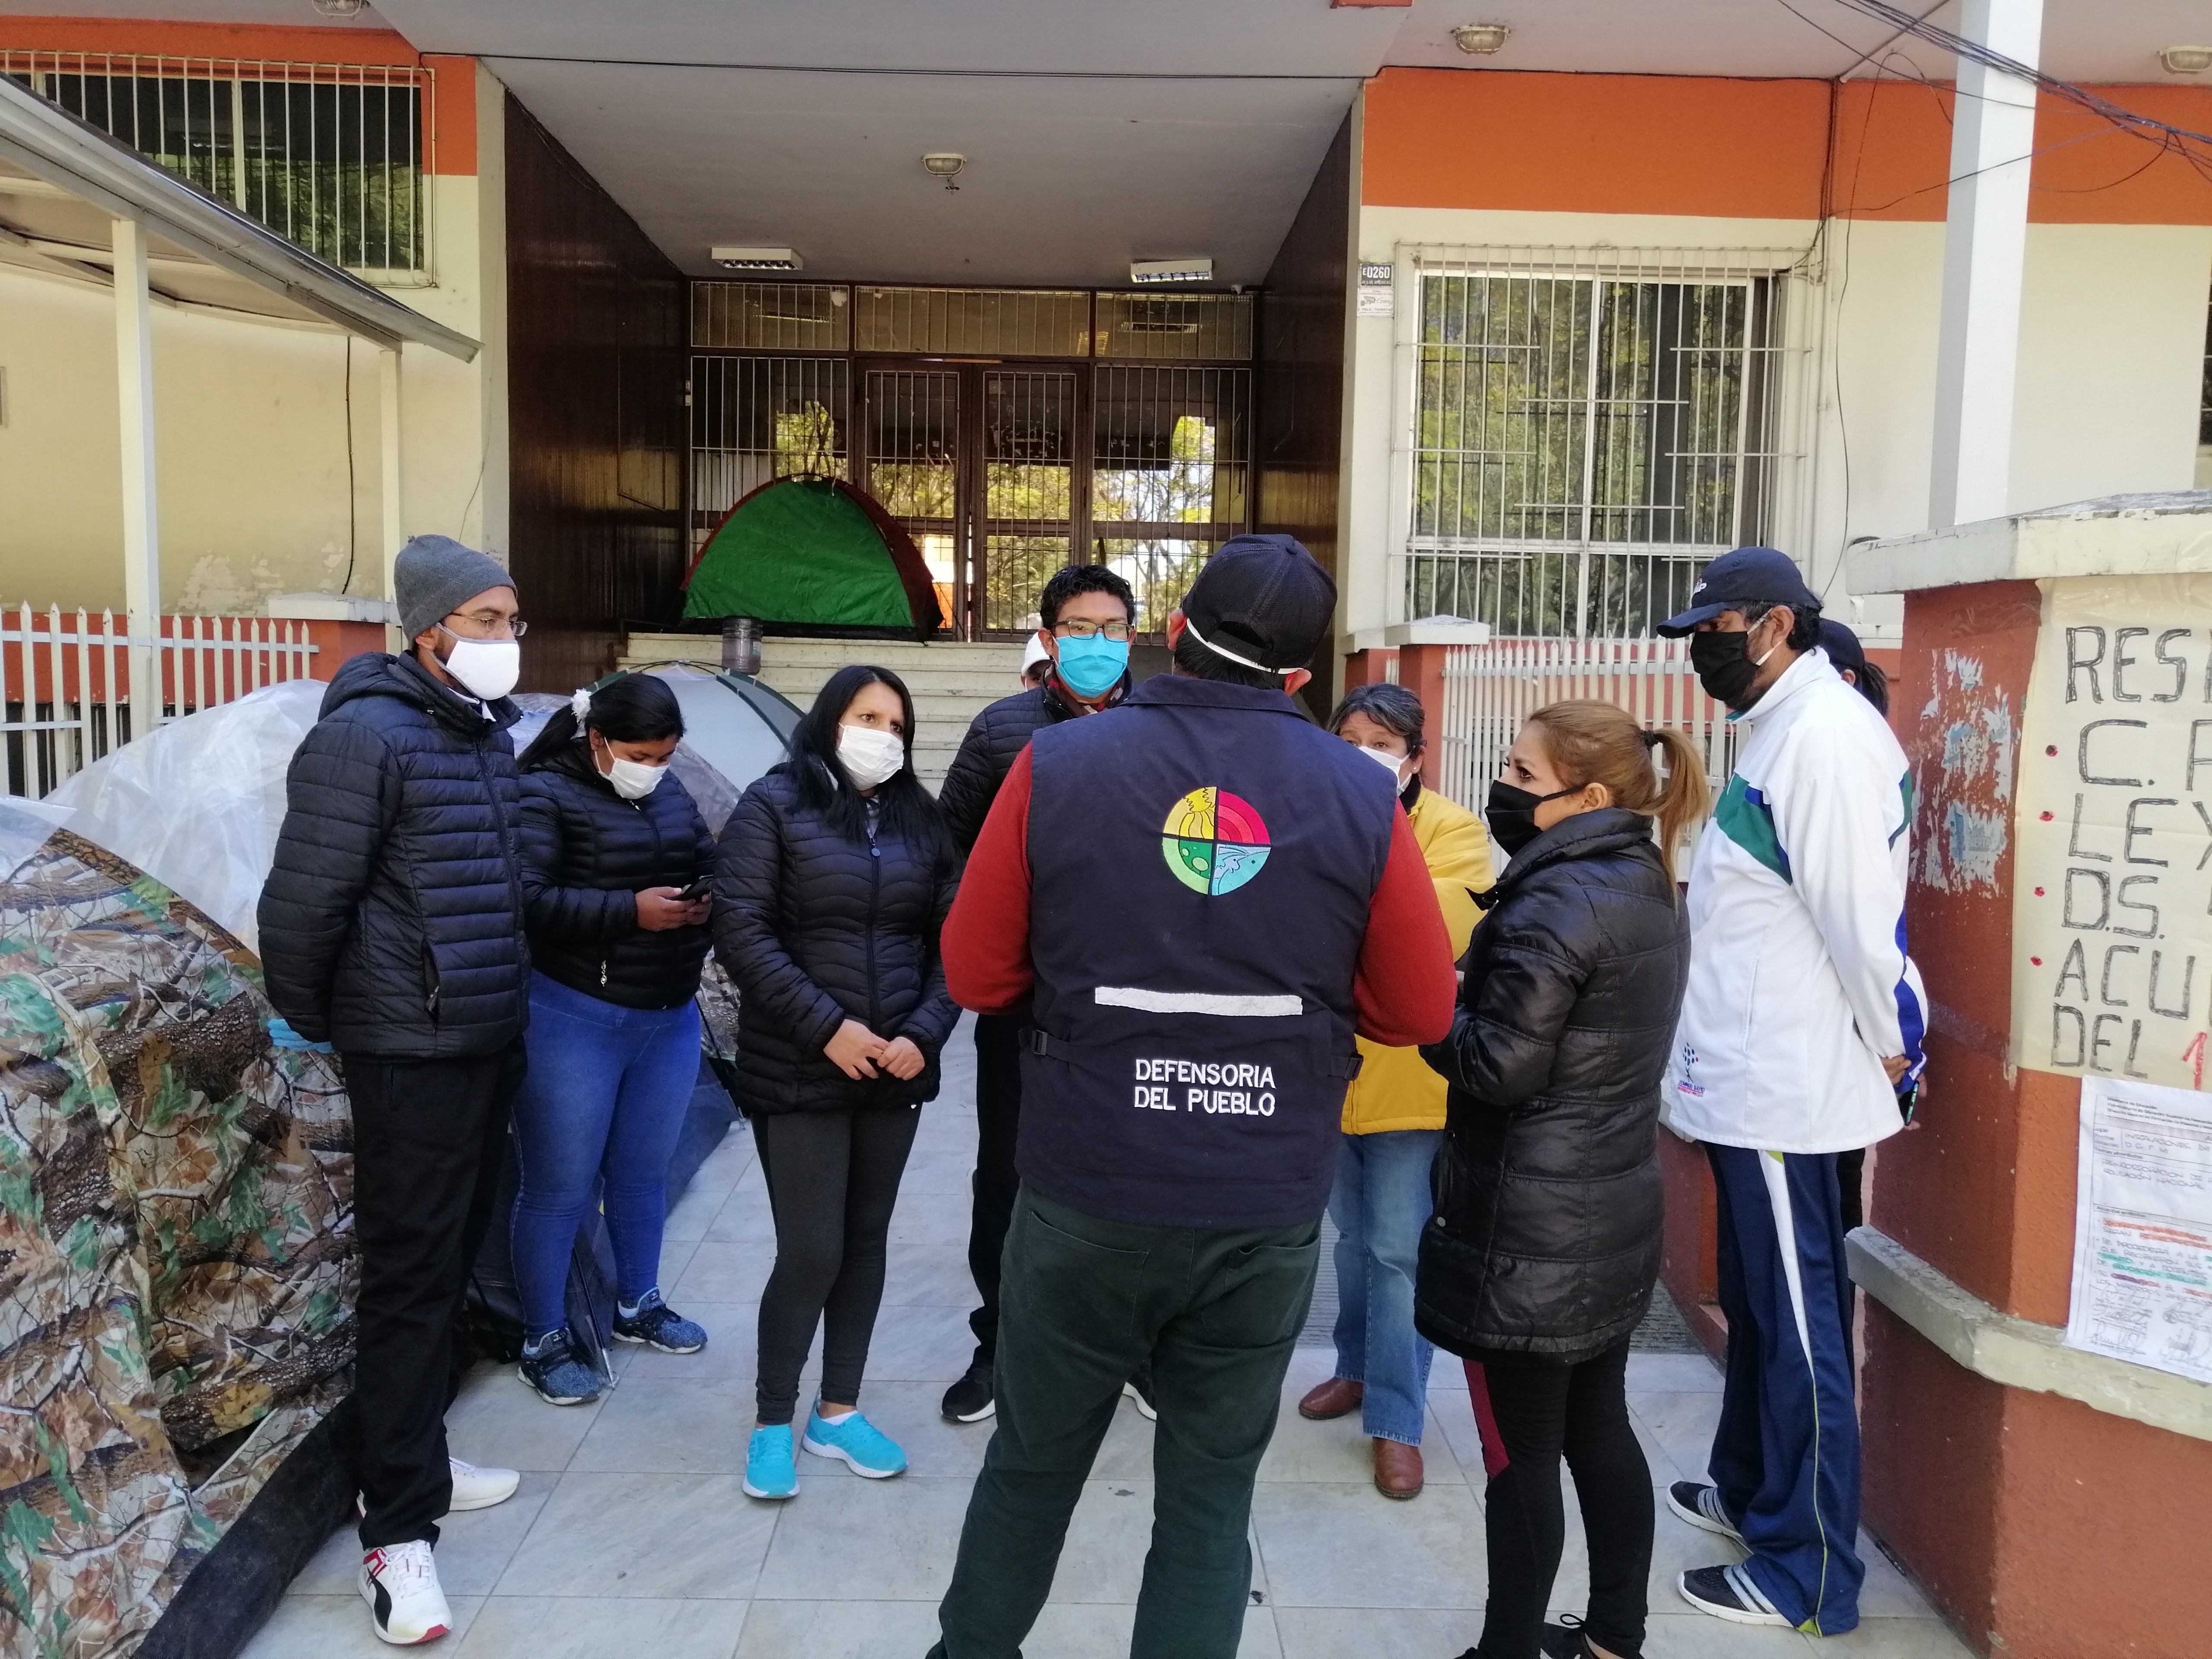 DEFENSORÍA DEL PUEBLO INSTA A AUTORIDADES EDUCATIVAS ATENDER CON PRIORIDAD DEMANDAS DE DOCENTES EN HUELGA DE HAMBRE